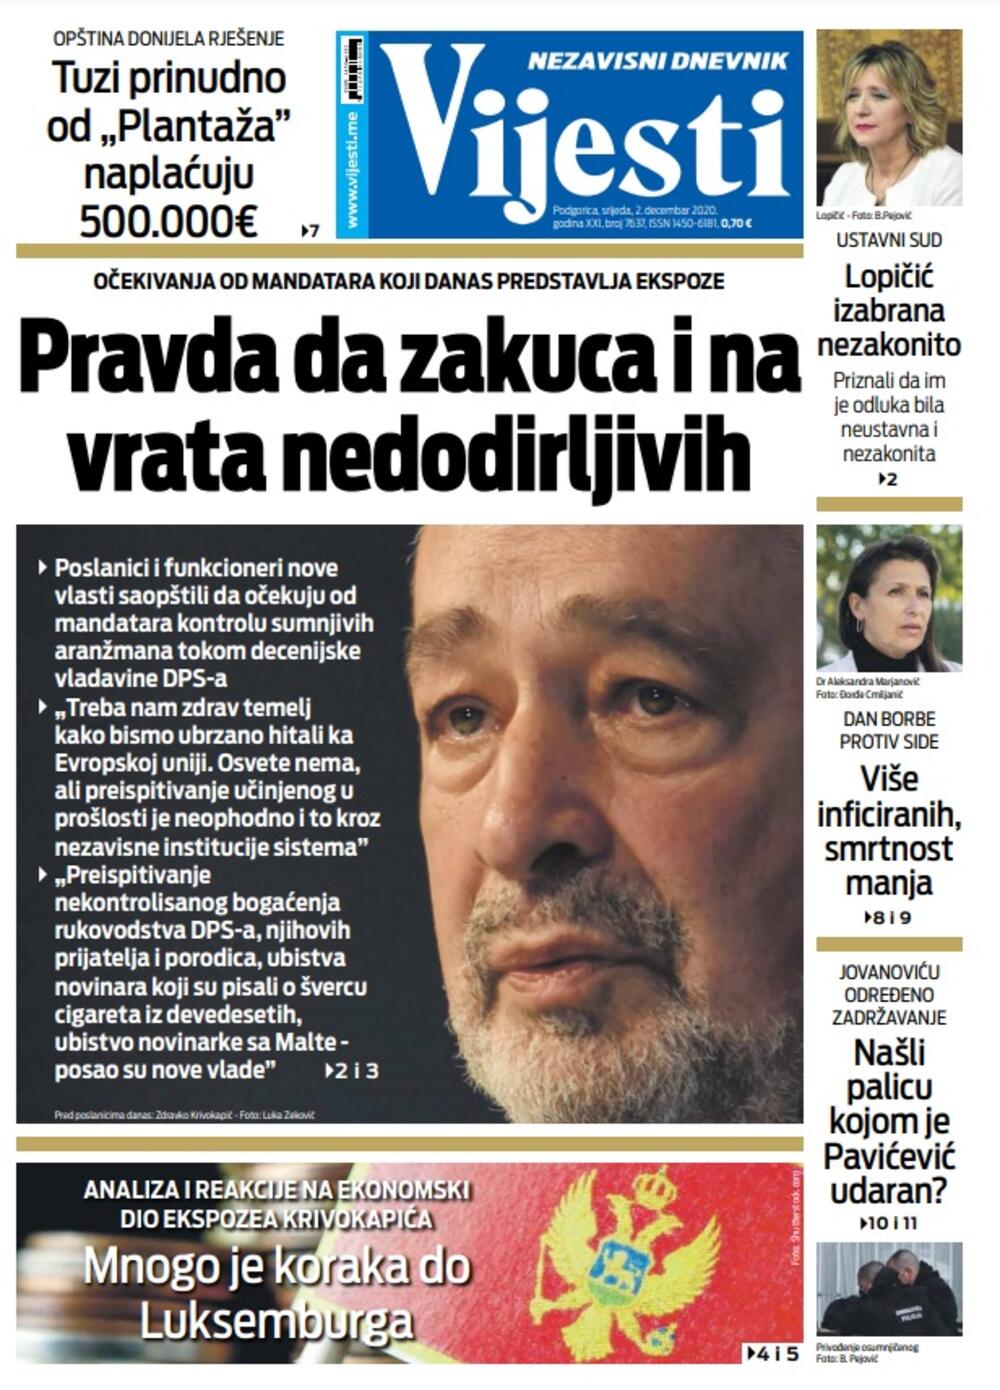 Naslovna strana "Vijesti" za srijedu 2. decembar 2020. godine, Foto: Vijesti